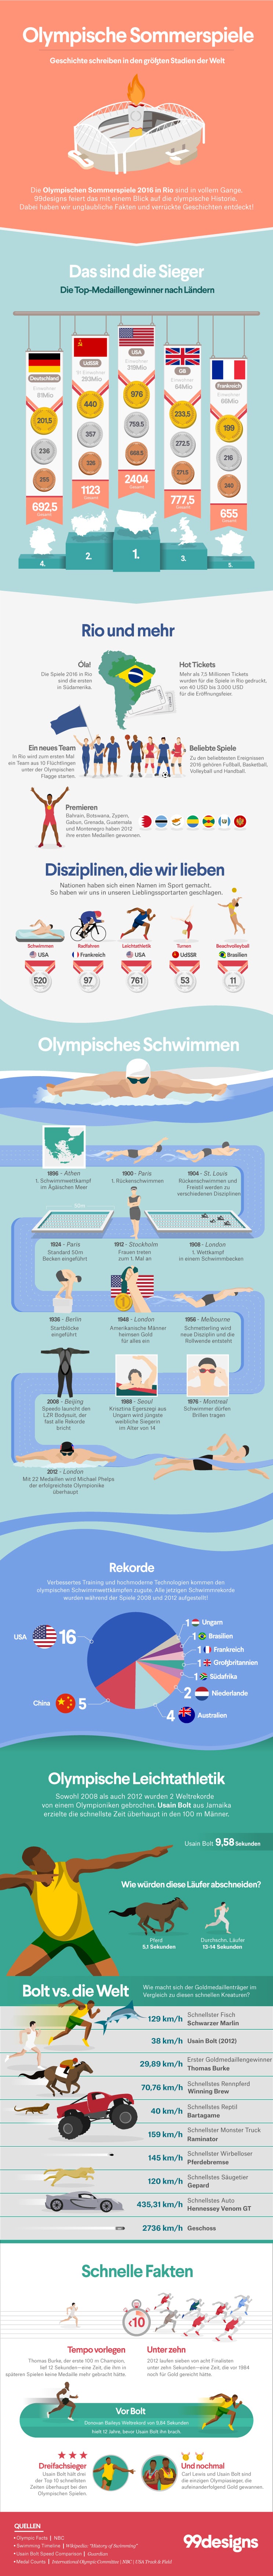 Infografik Olympische Spiele